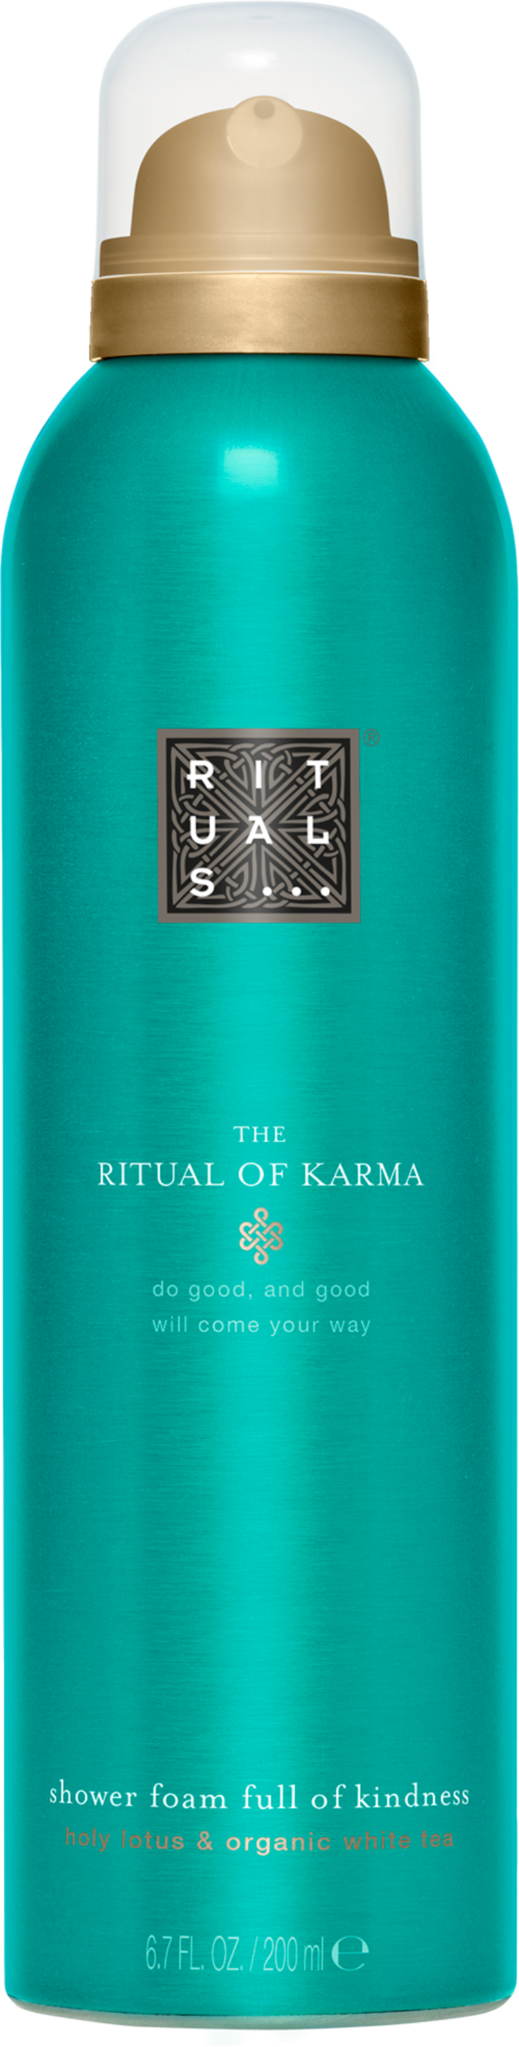 The Ritual of Karma Foaming Shower Gel